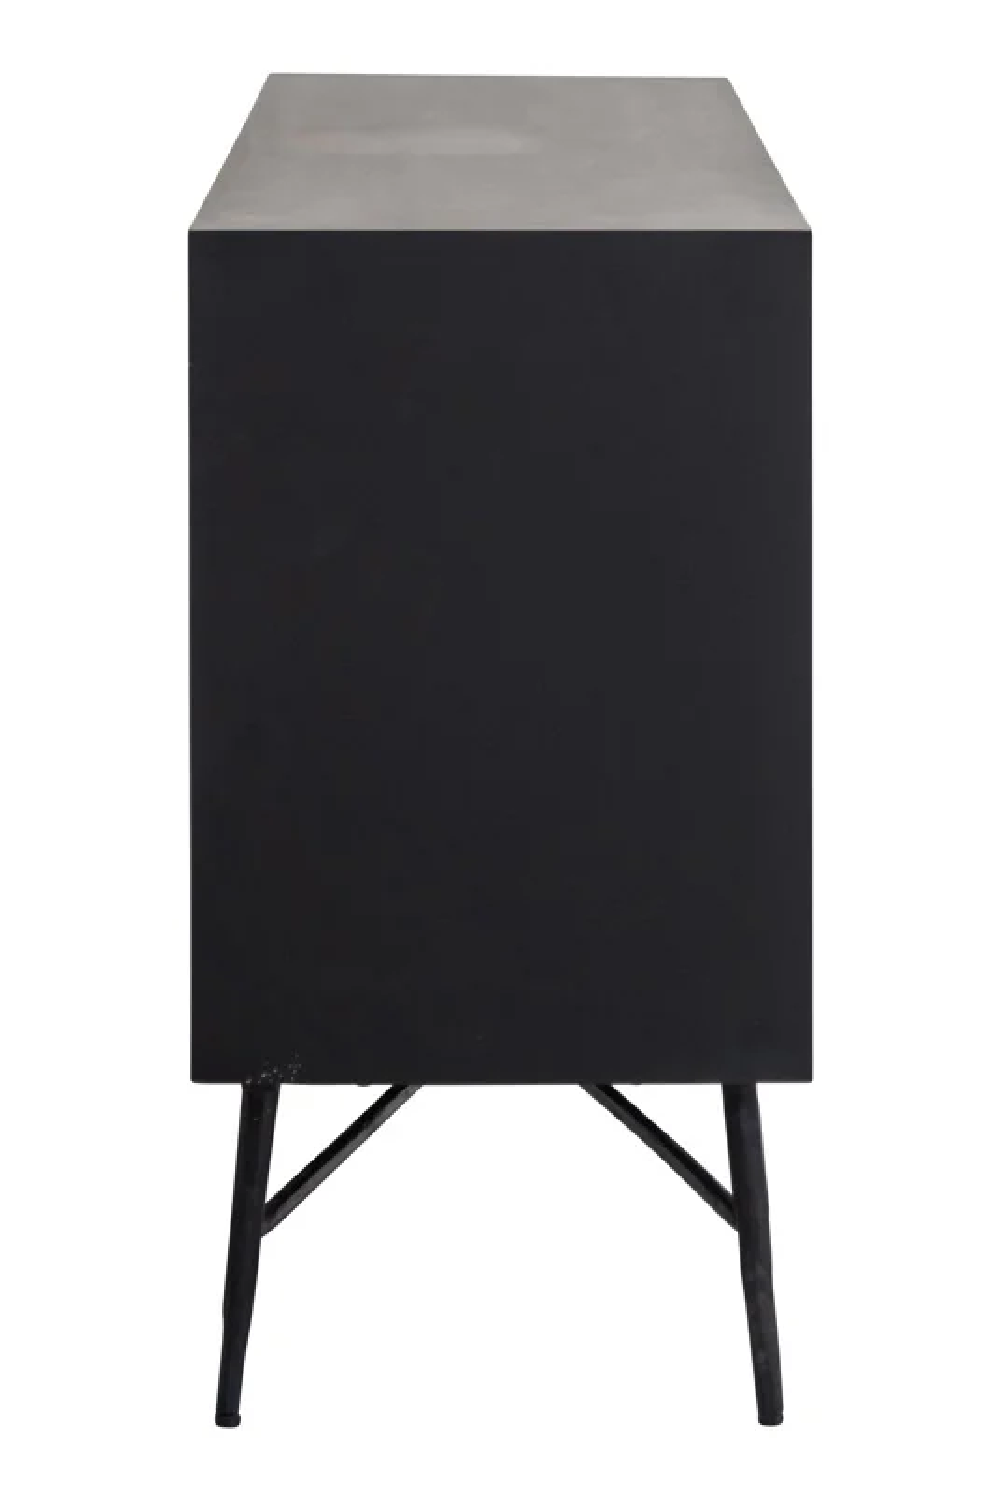 Faceted Modern Sideboard | OROATetro | Oroa.com 